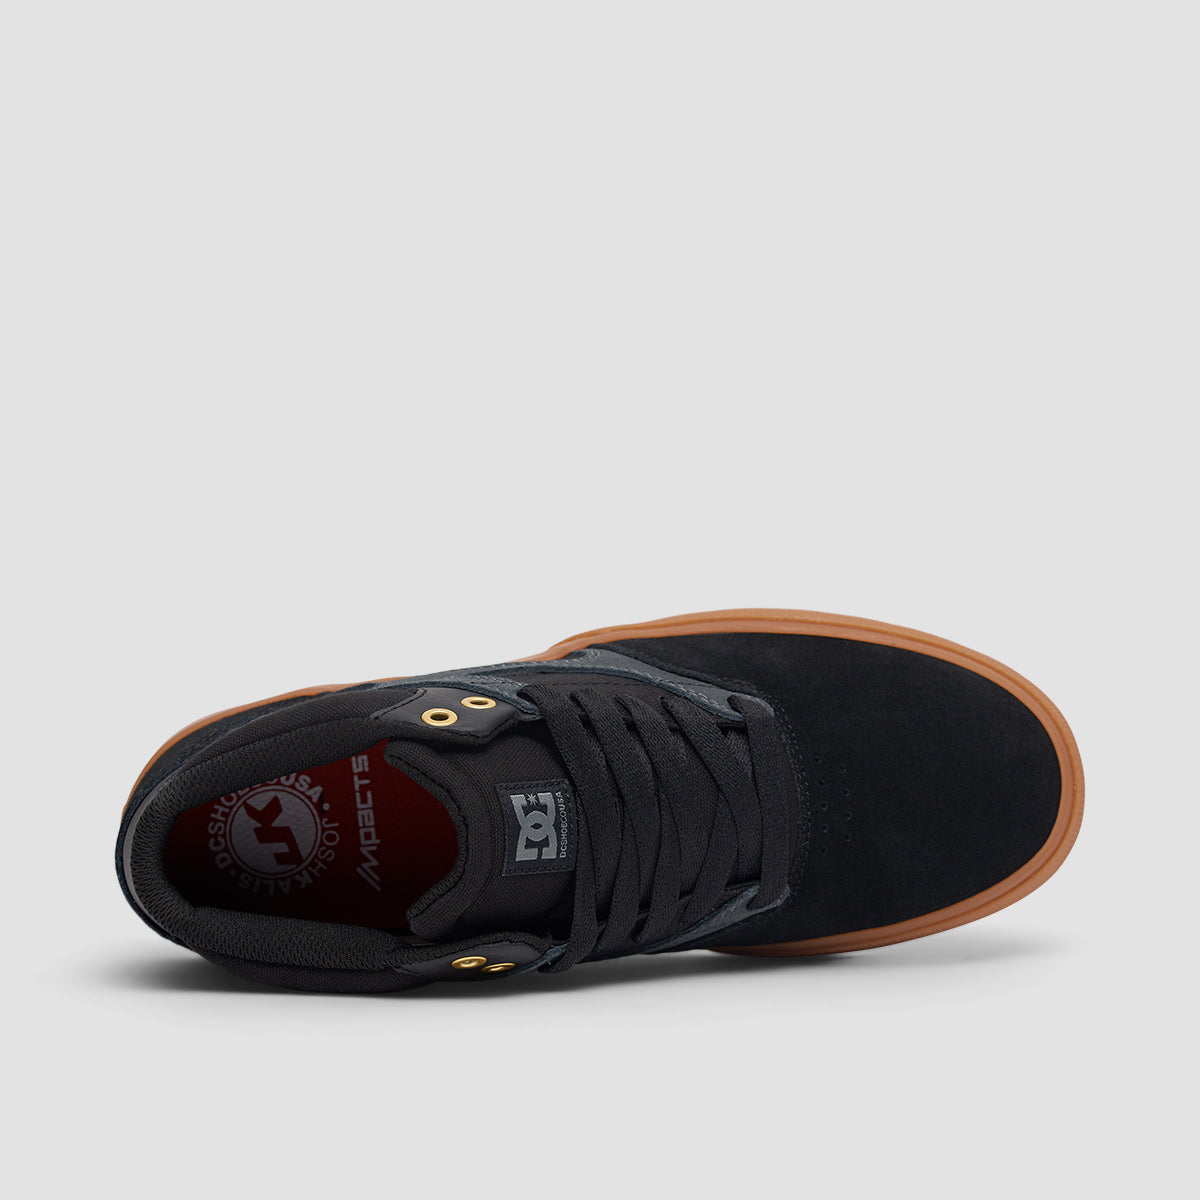 DC Kalis Vulc Mid S Shoes - Black/Gum